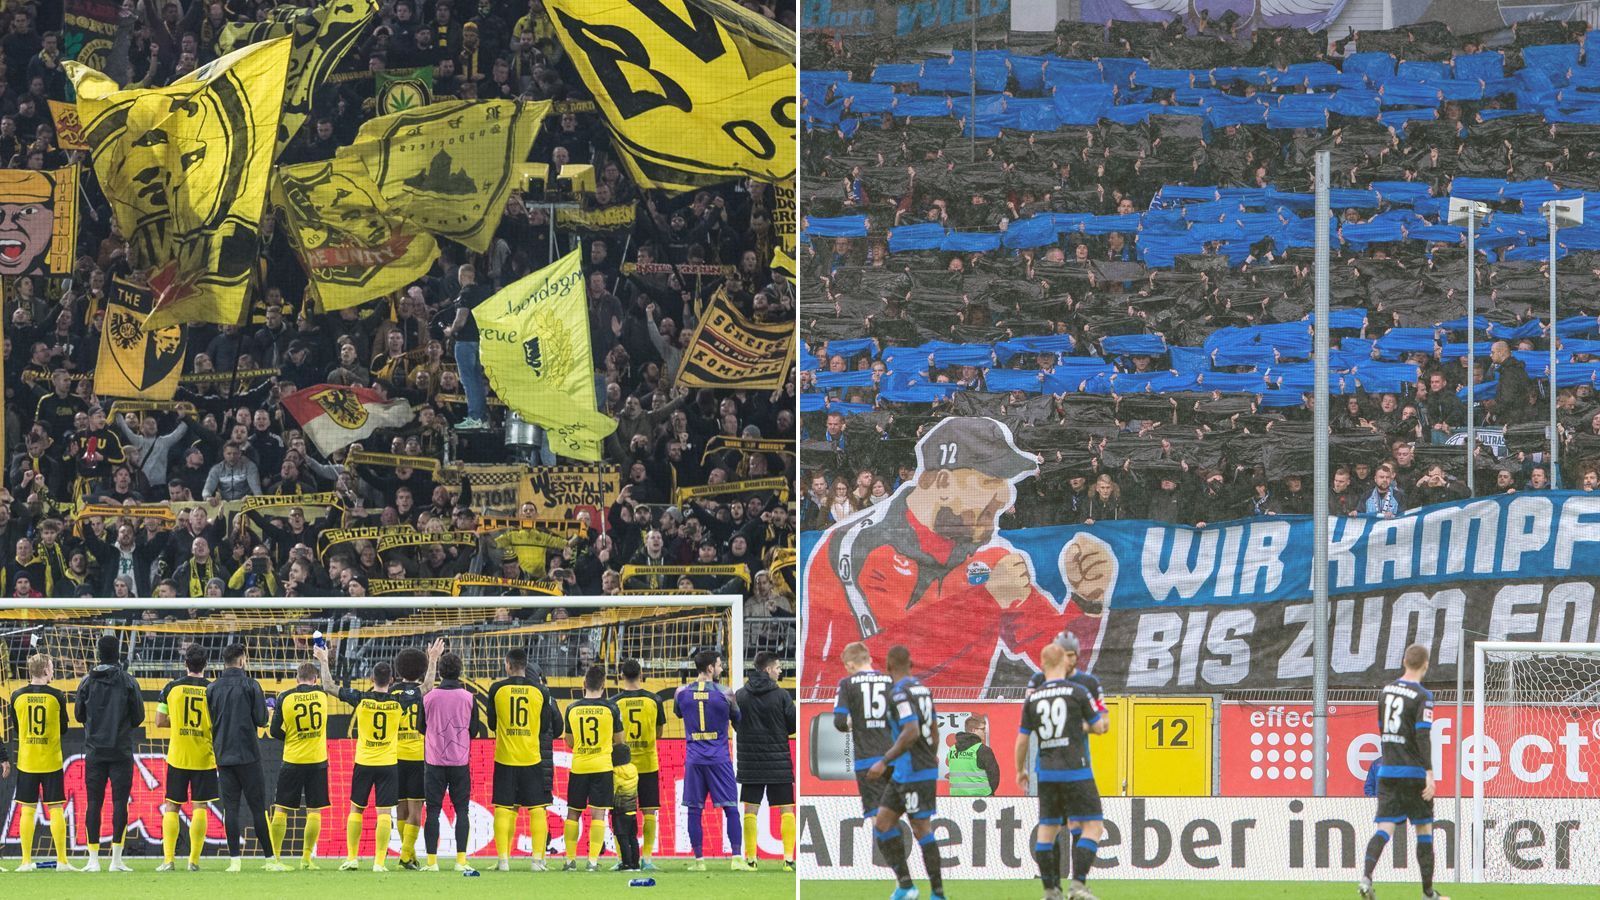 
                <strong>Mitglieder</strong><br>
                Borussia Dortmund wurde im Jahr 1909 gegründet, der SC Paderborn erst 1985. Entsprechend groß ist auch der Unterschied im Bereich der Mitglieder-Anzahl. Laut "statista.com" zählt der BVB in November 2019 154.000 Mitglieder und ist in dieser Kategorie hinter den Bayern und Schalke auf Platz 3 in der Bundesliga. Paderborn hat aktuell 5.338 Mitglieder und ist Vorletzter in der Mitglieder-Tabelle der Bundesliga. Nur RB Leipzig (750 Mitglieder) hat noch weniger registrierte Mitglieder als der aktuelle Bundesliga-Aufsteiger. 
              